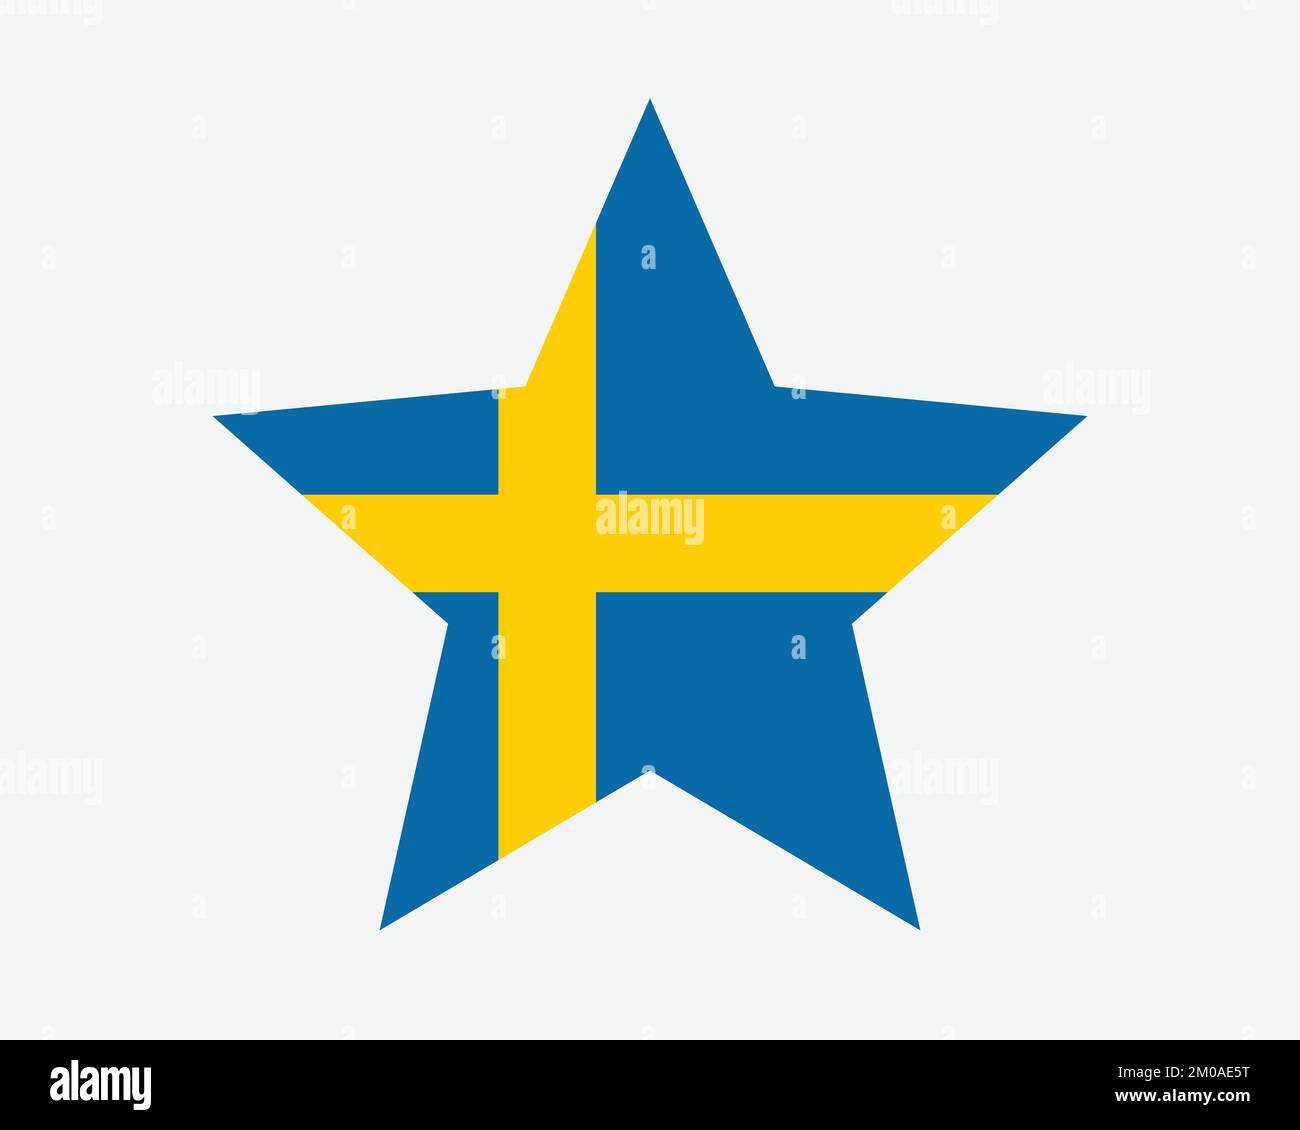 Sweden Star Flag. Swedish Swede Star Shape Flag. Kingdom of Sweden Country National Banner Icon Symbol Vector Flat Artwork Graphic Illustration Stock Vector